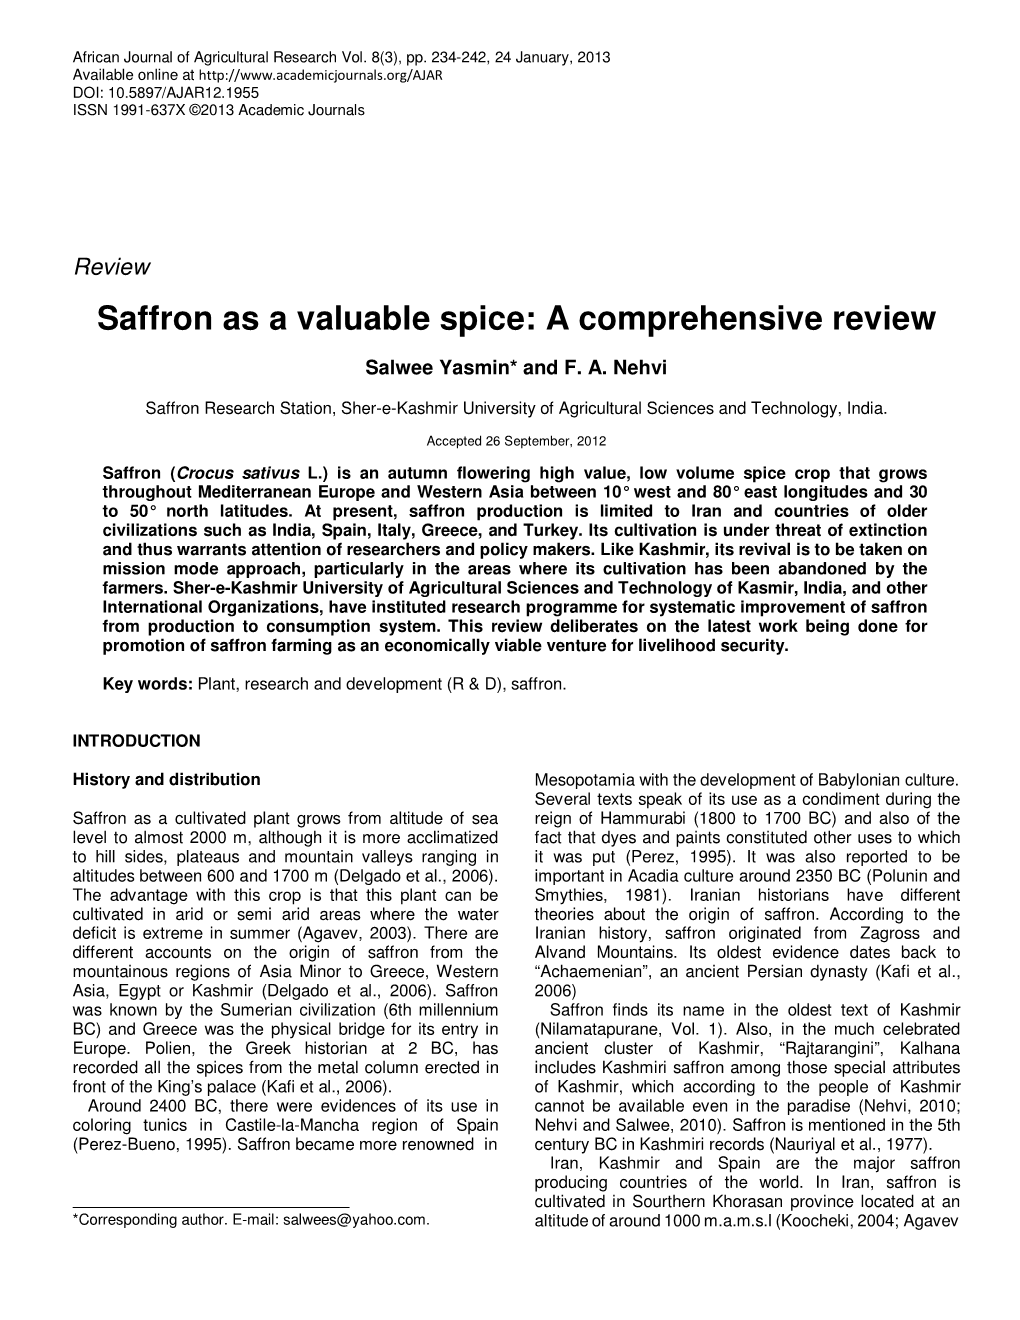 Saffron As a Valuable Spice: a Comprehensive Review